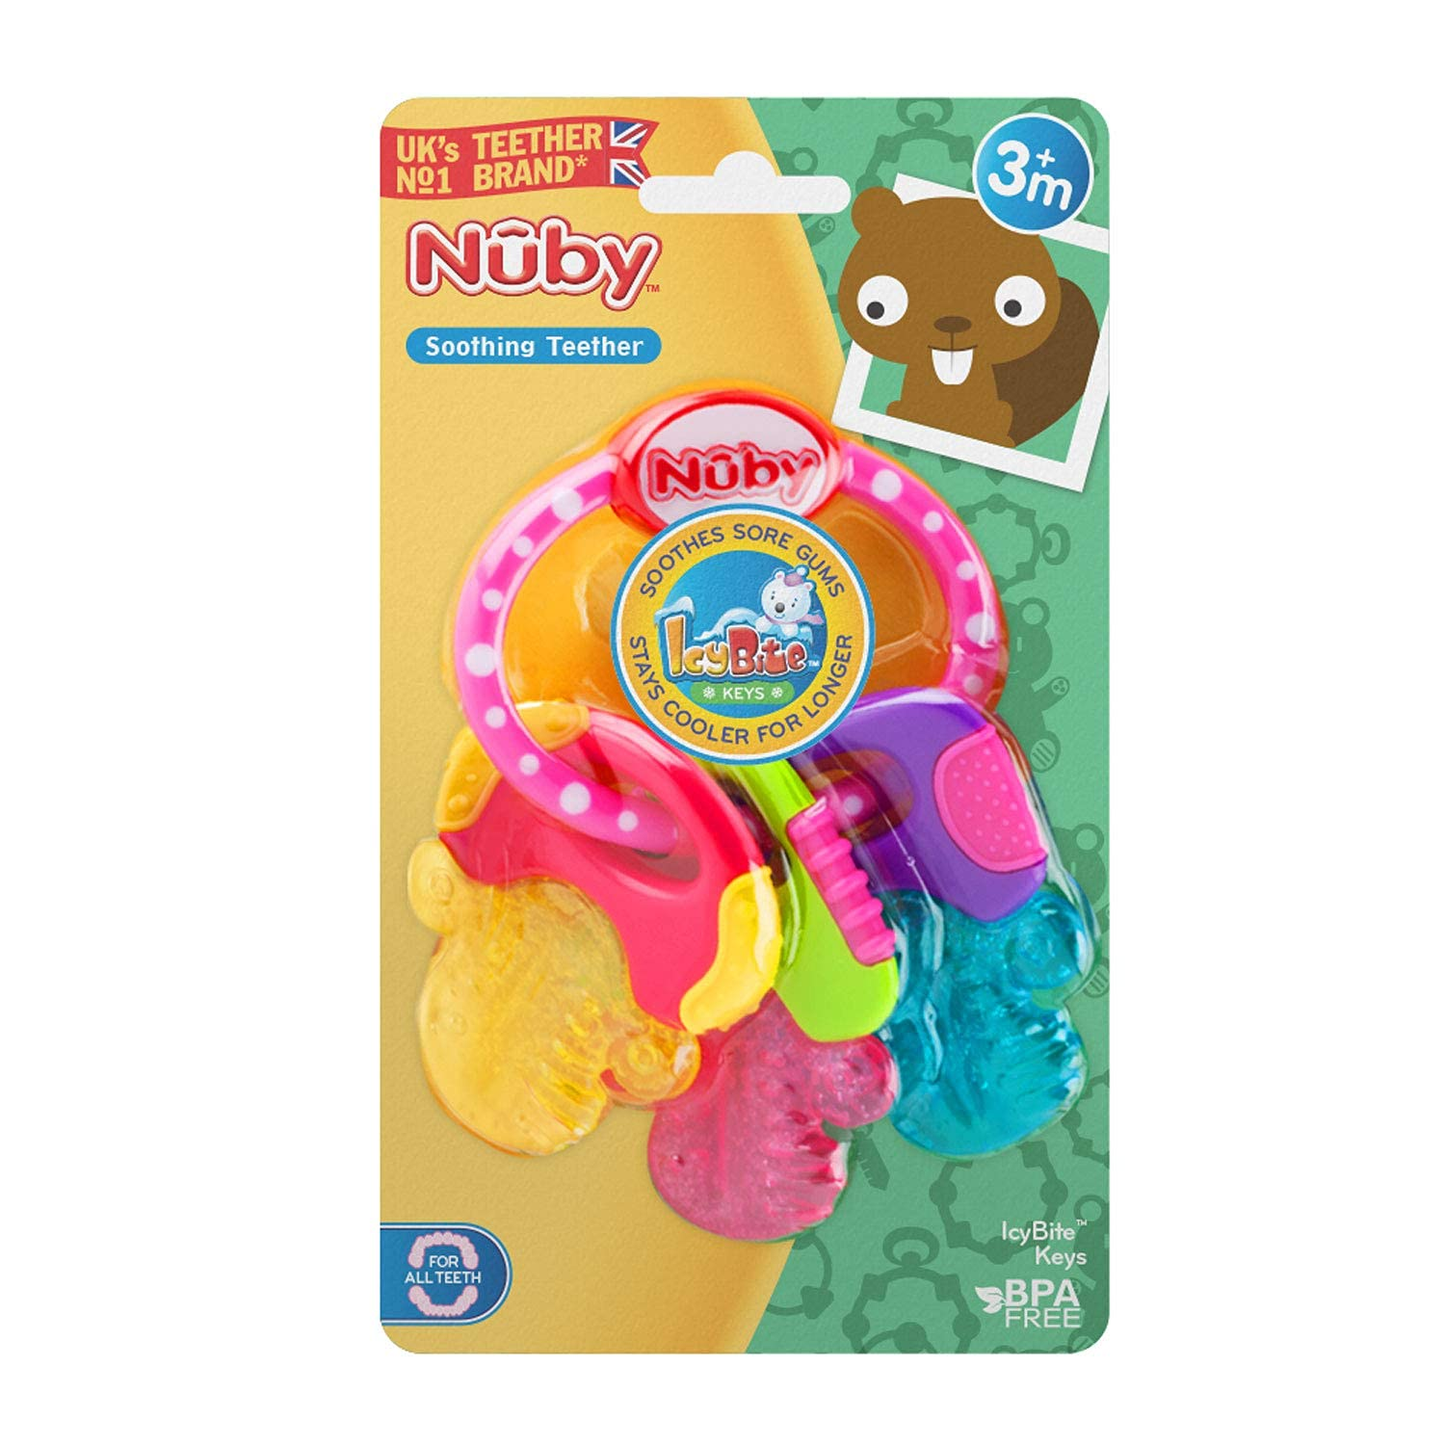 Nuby Ice Gel Teether Keys, 1 Pack Pink (567)